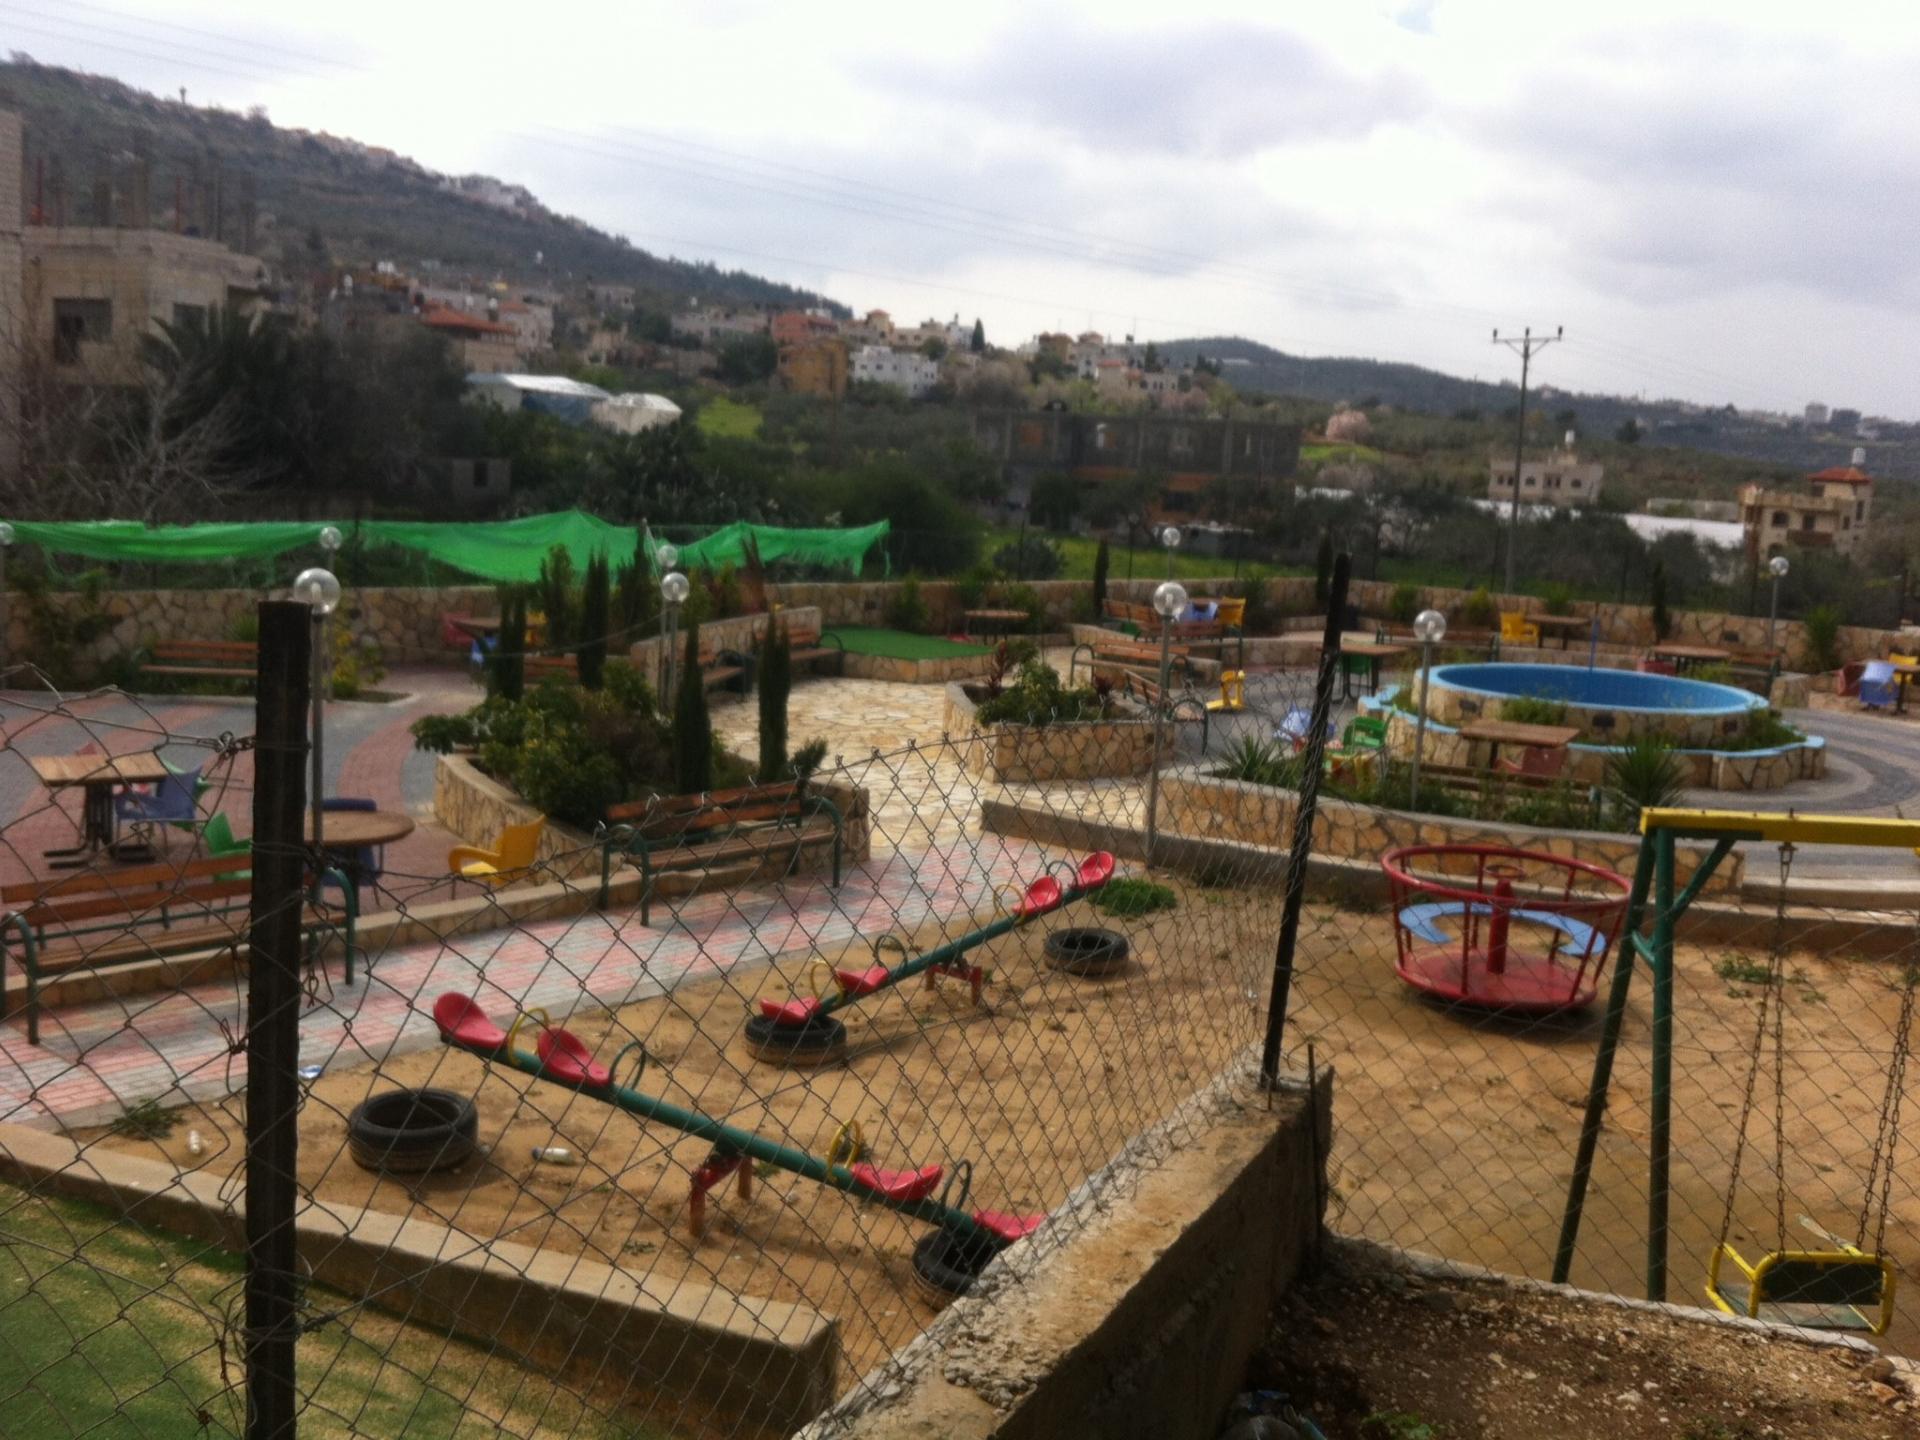 Playground at Messha